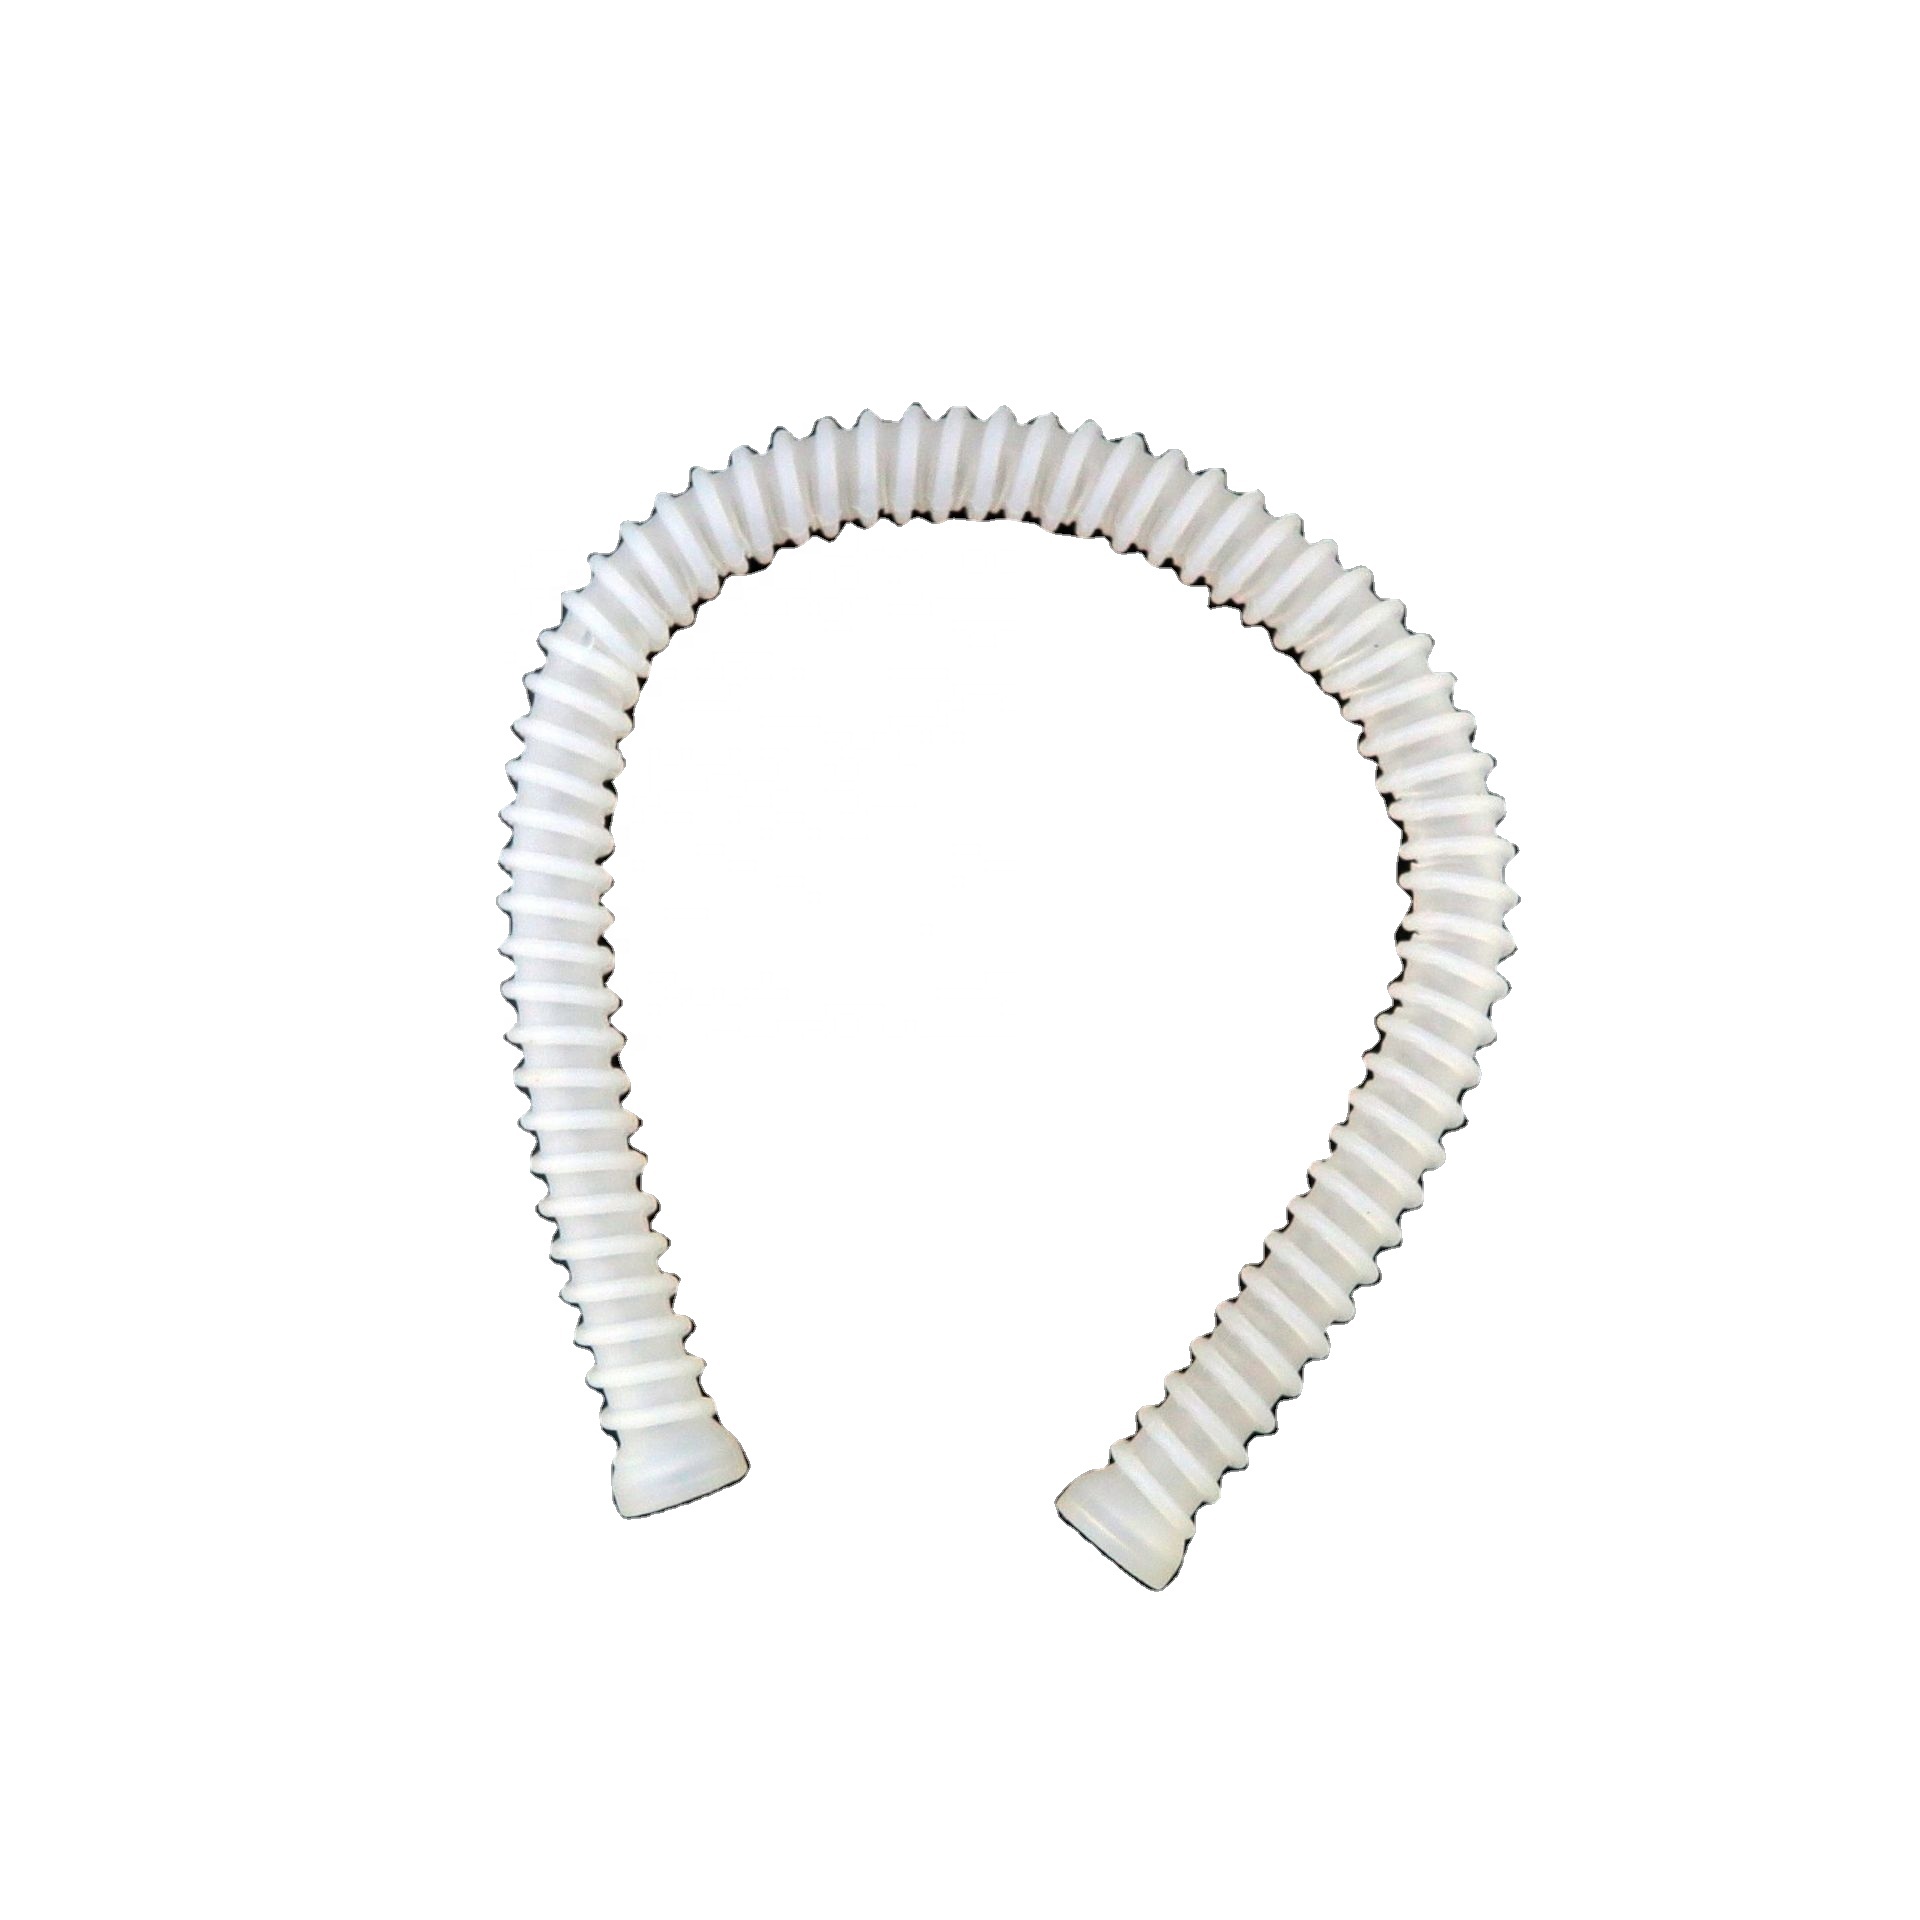 nebulizer tube air breathing medical corrugated silicon hose